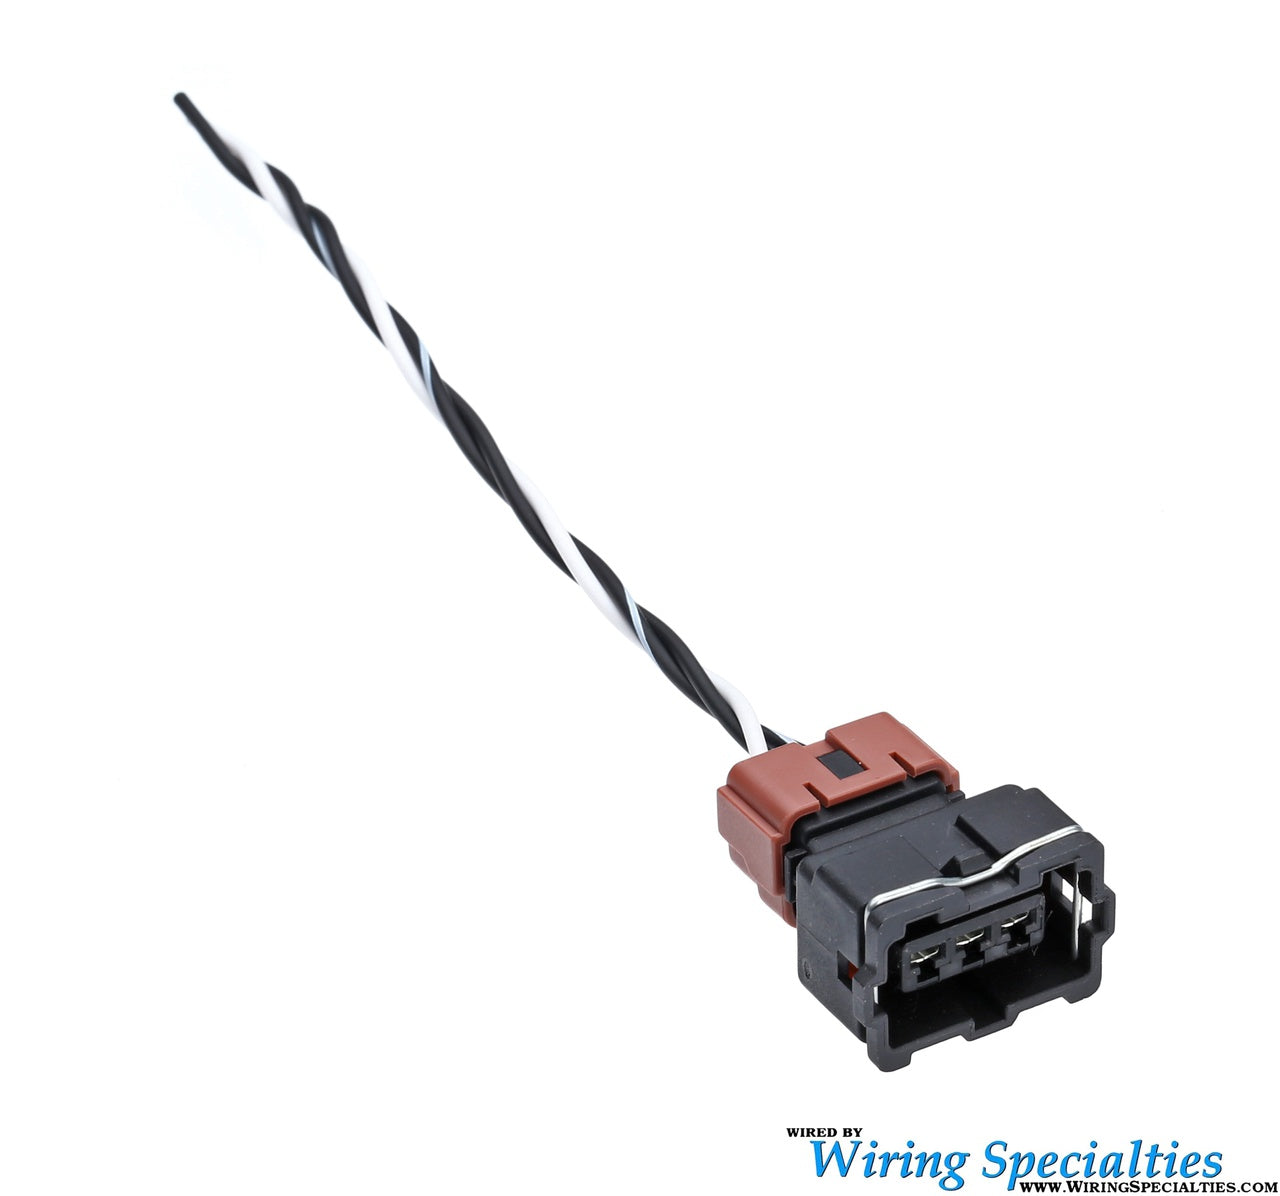 Wiring Specialties KA24E MAFS (Mass Air Flow Sensor) Pigtail